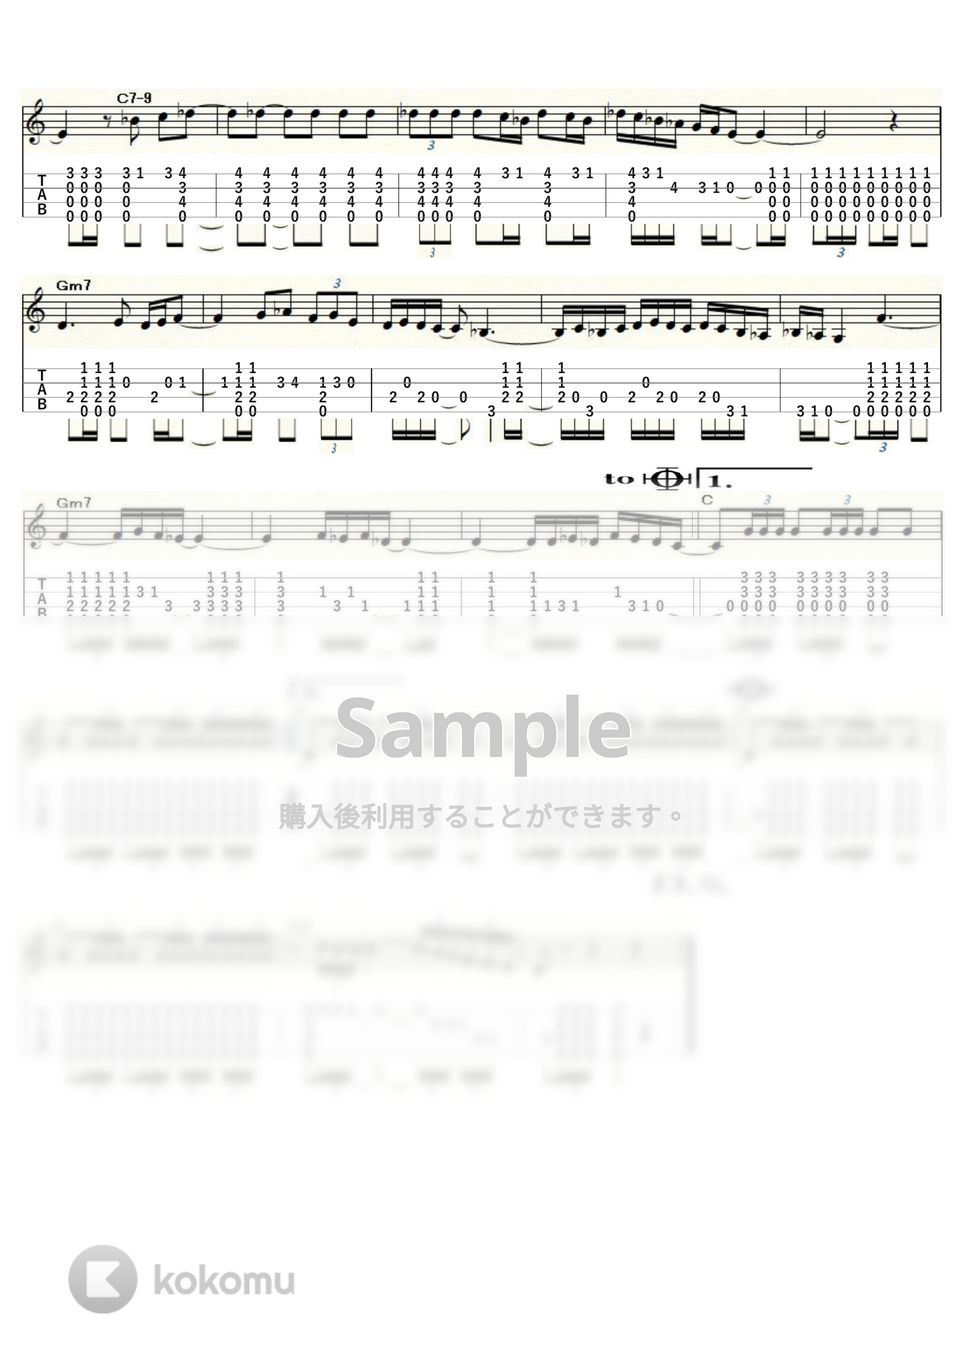 モーリス・ラヴェル - ボレロ (ｳｸﾚﾚｿﾛ/Low-G/中級) by ukulelepapa